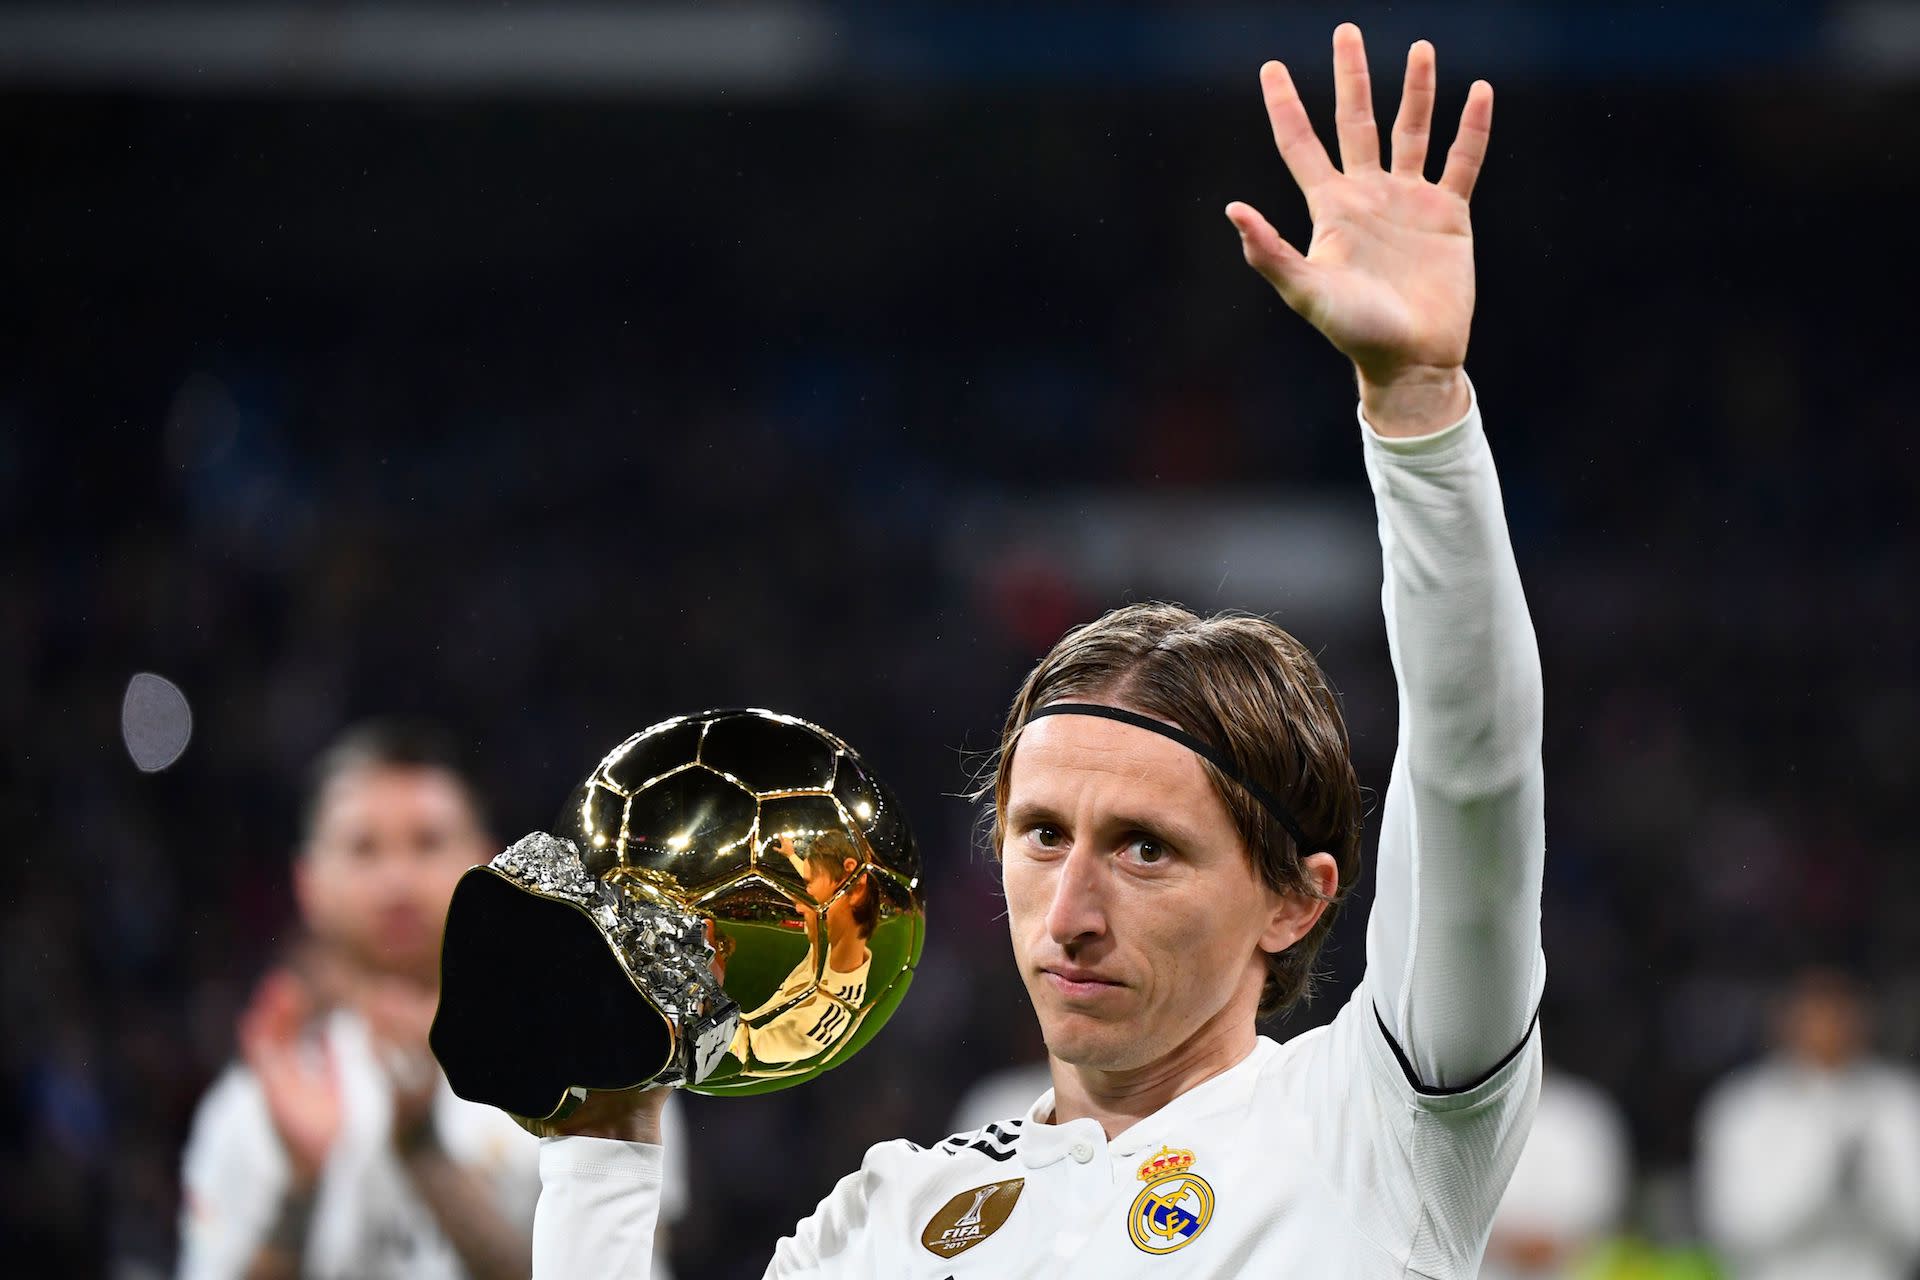 Ballon Dor Winner Luka Modric Calls Out Cristiano Ronaldo Lionel Messi For Skipping Ceremony 4220